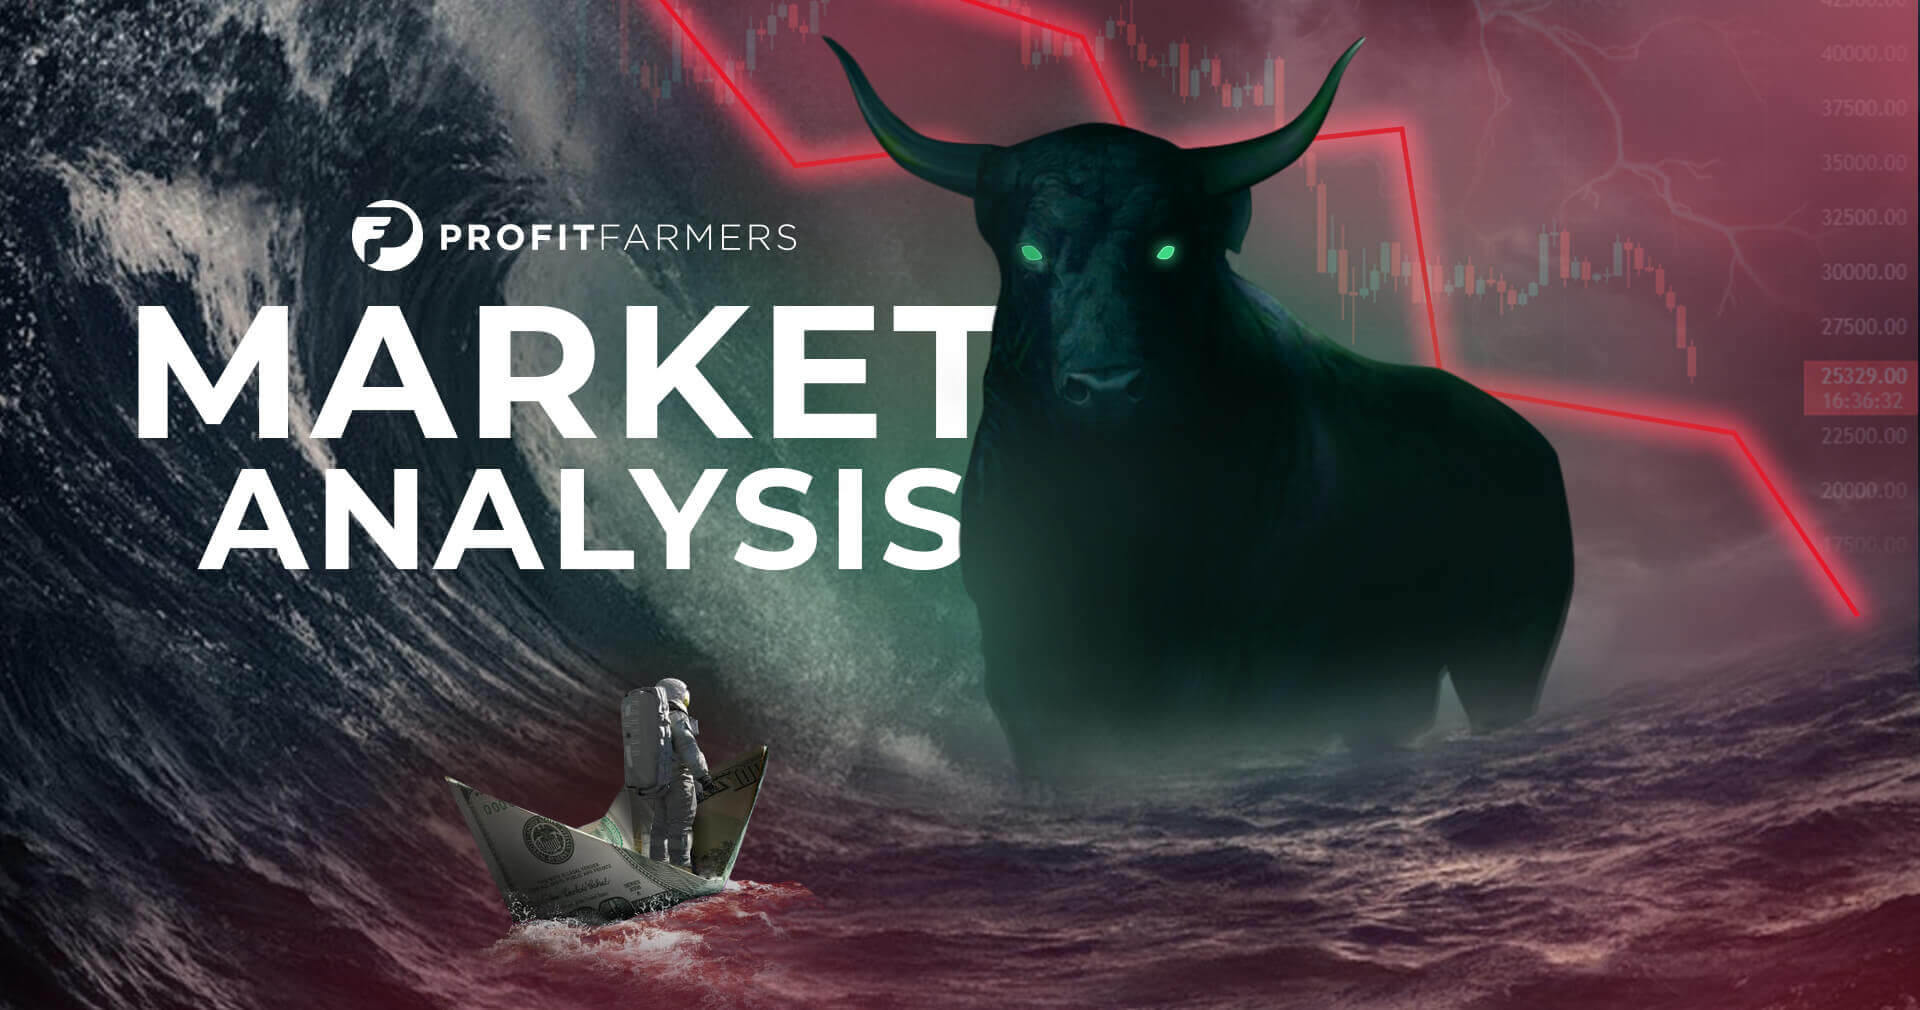 market analysis fresh blood entering waters